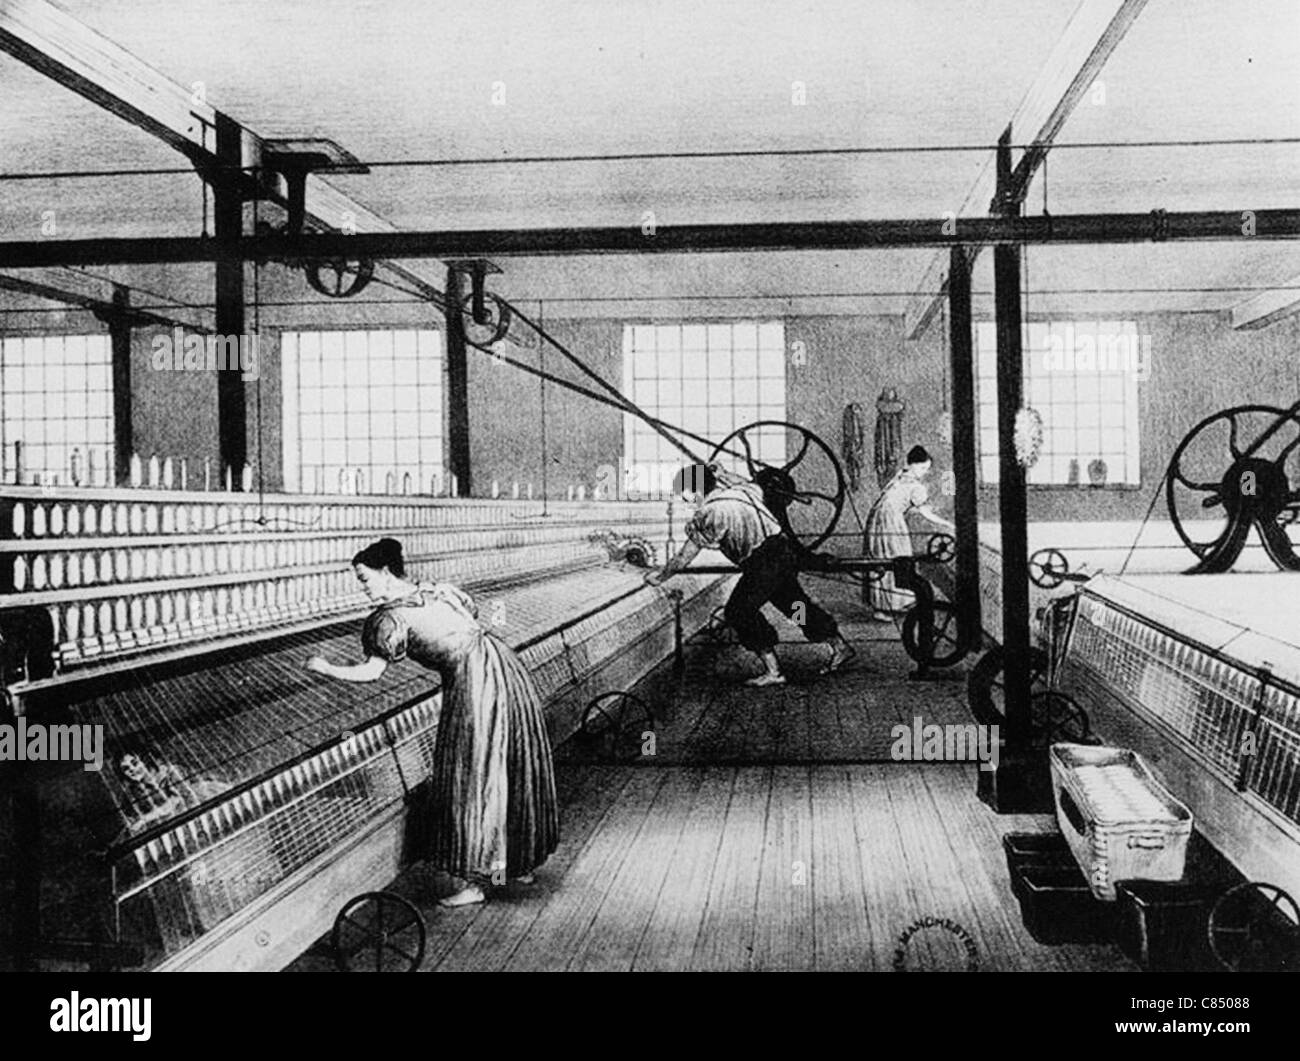 Baumwolle zu spinnen-Fabrik in Lancashire im Jahr 1823. Hinweis: Schnitzeljagd am kauerte ganz links, um verworfene Baumwolle, eine gefährliche Aufgabe zu fangen. Stockfoto